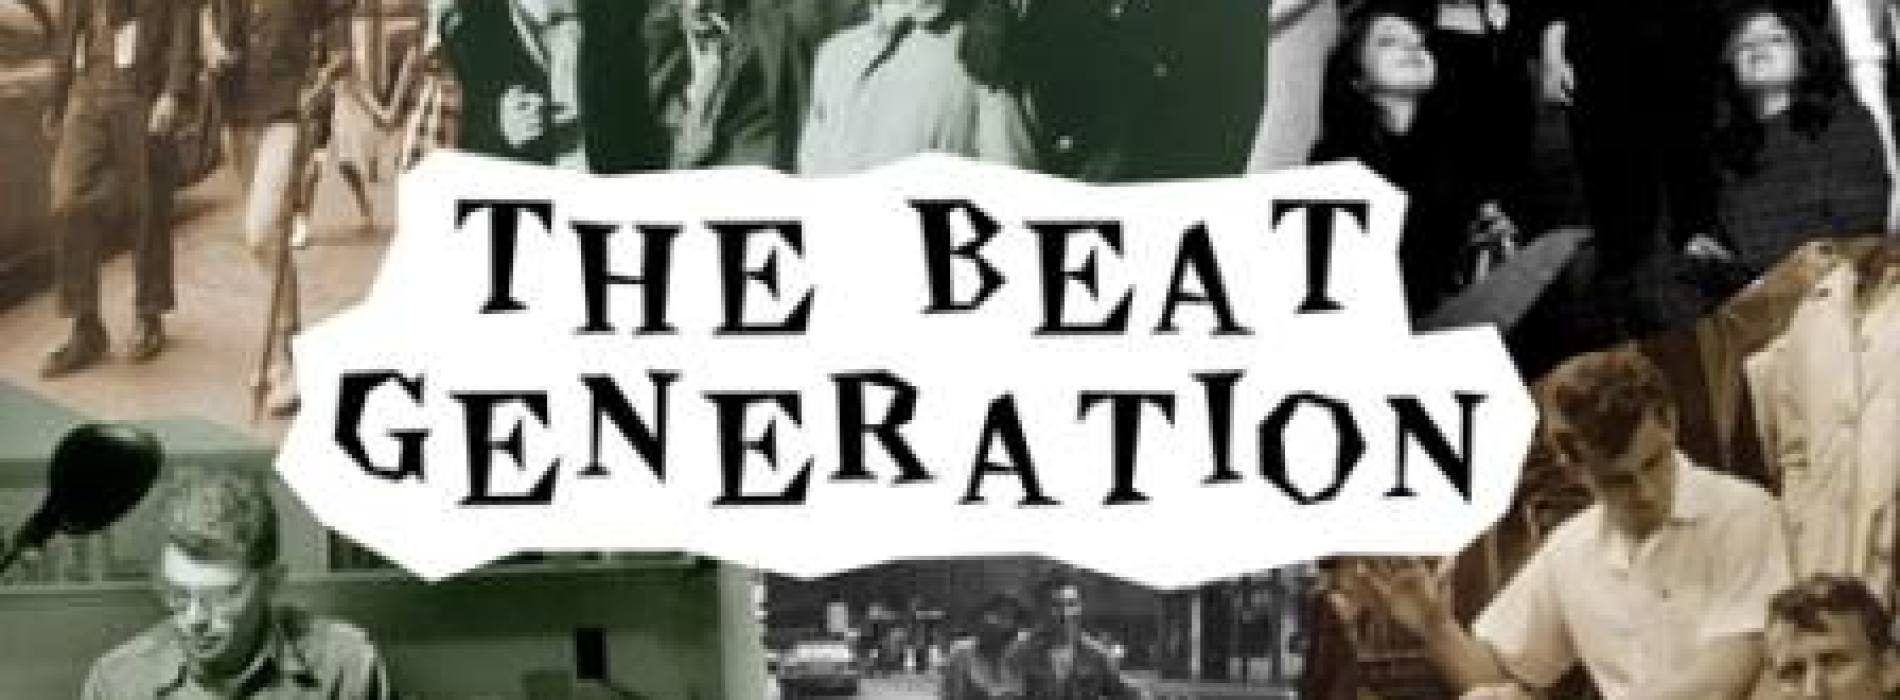 NostosTeatro ad Aversa, il ritorno a casa della beat generation